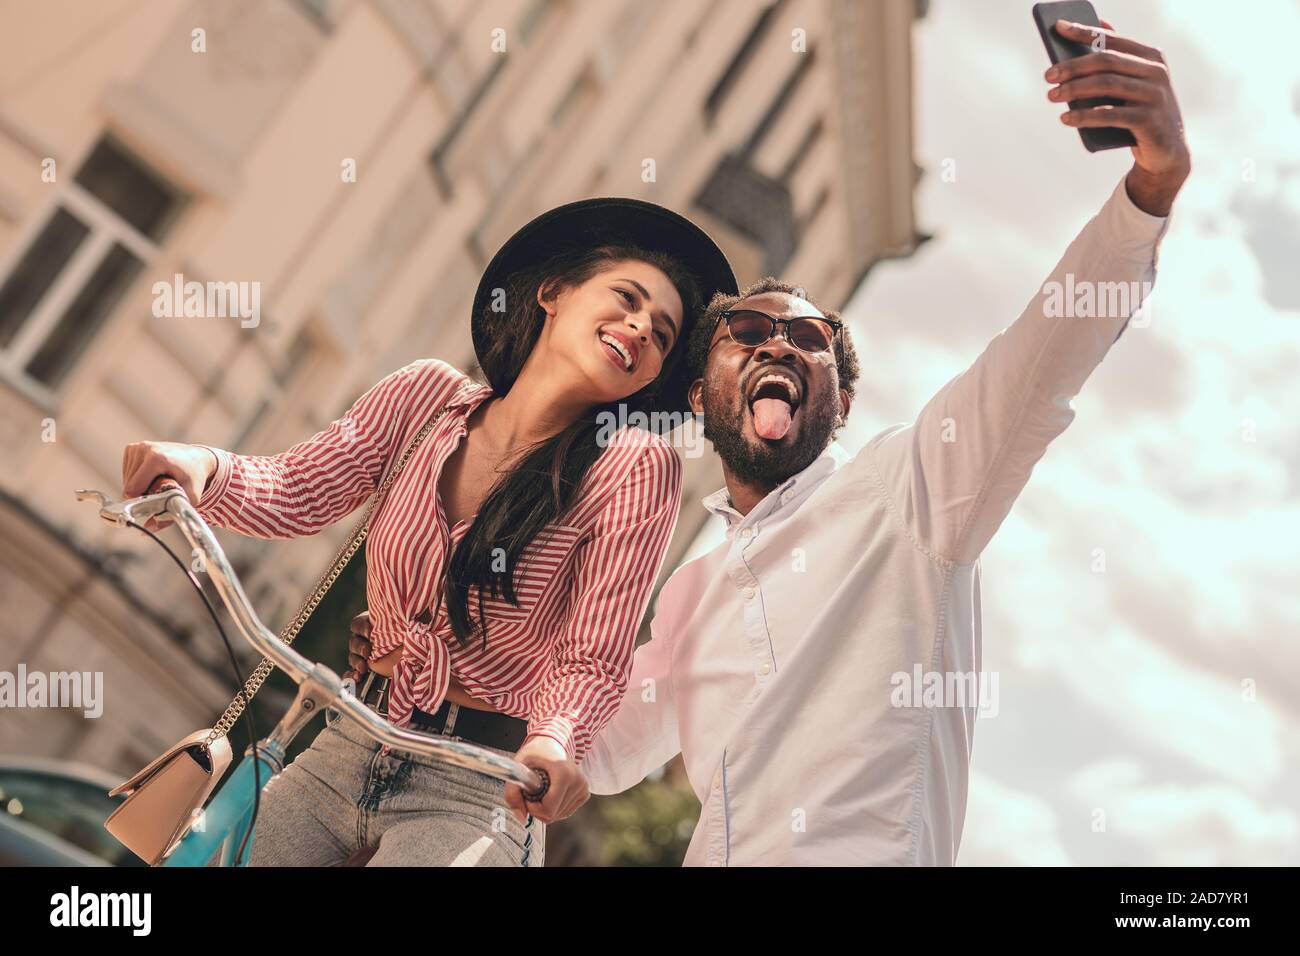 Übersicht Zunge für lustige selfie Foto Stockfoto